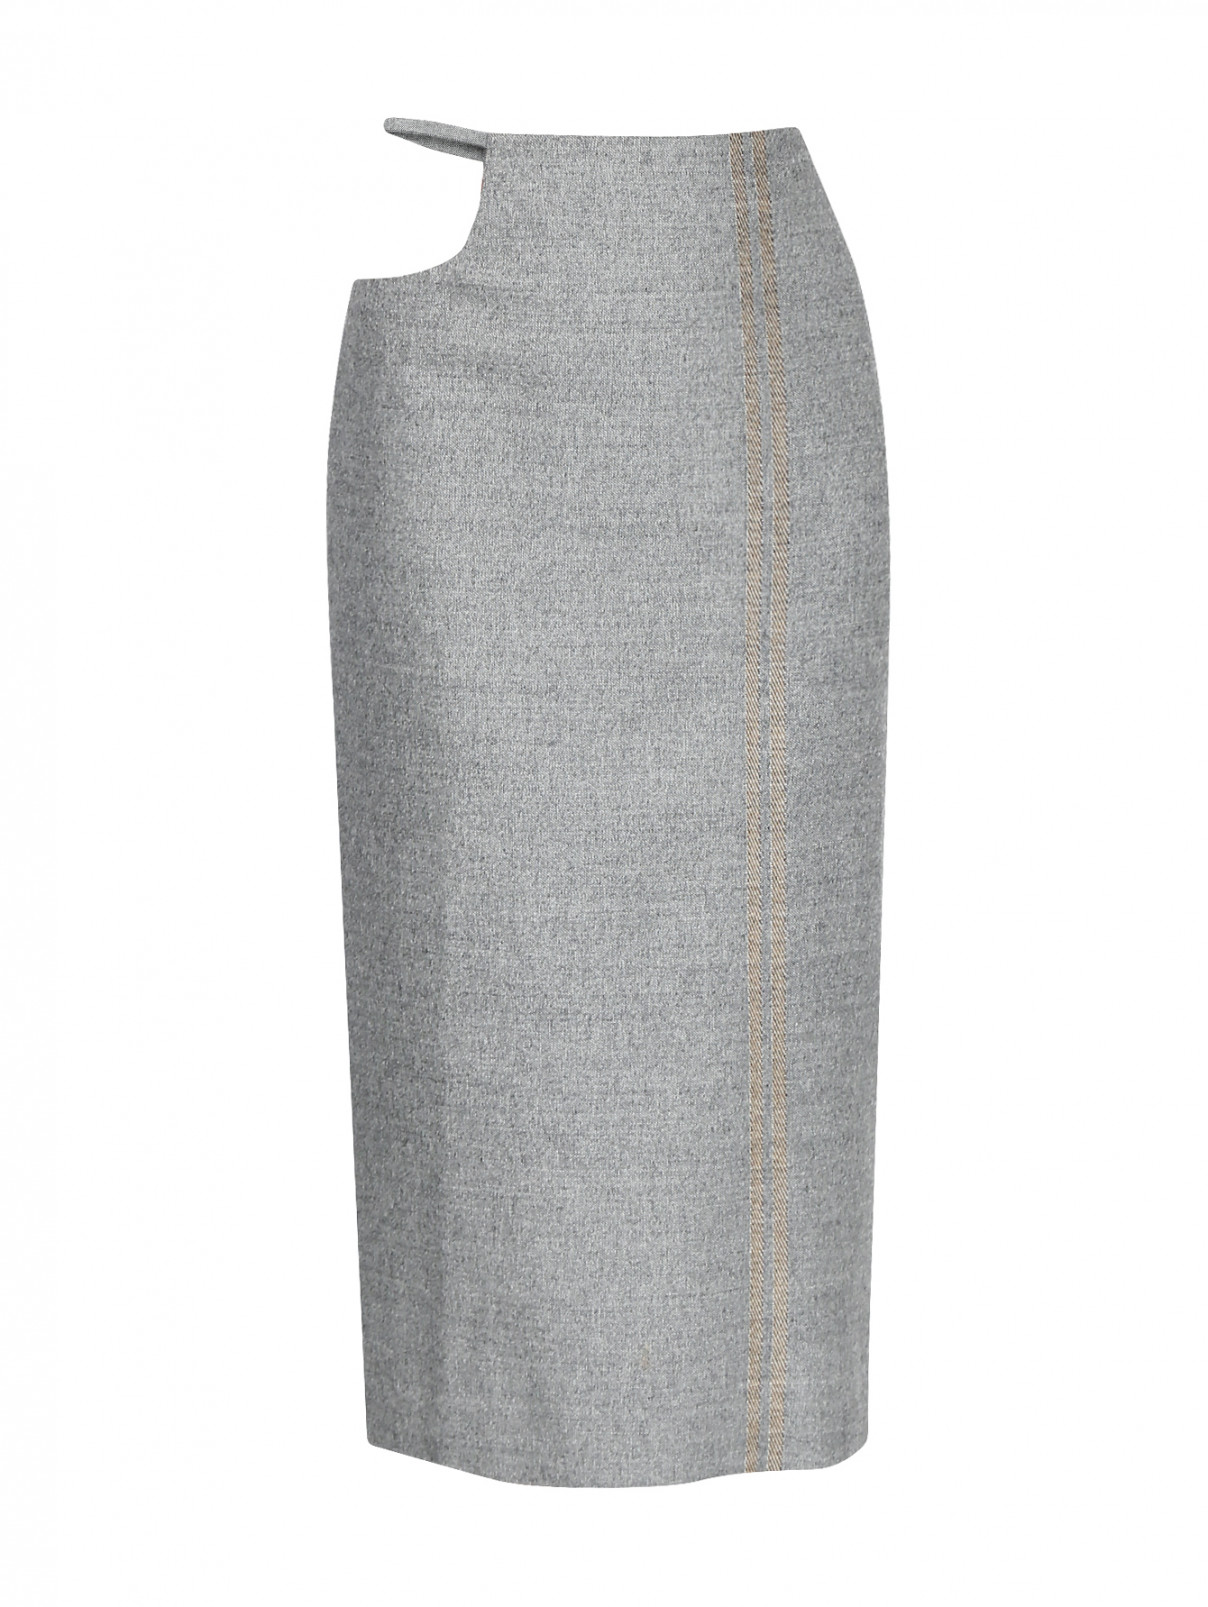 Юбка из шерсти с декоративным вырезом Maison Margiela  –  Общий вид  – Цвет:  Серый